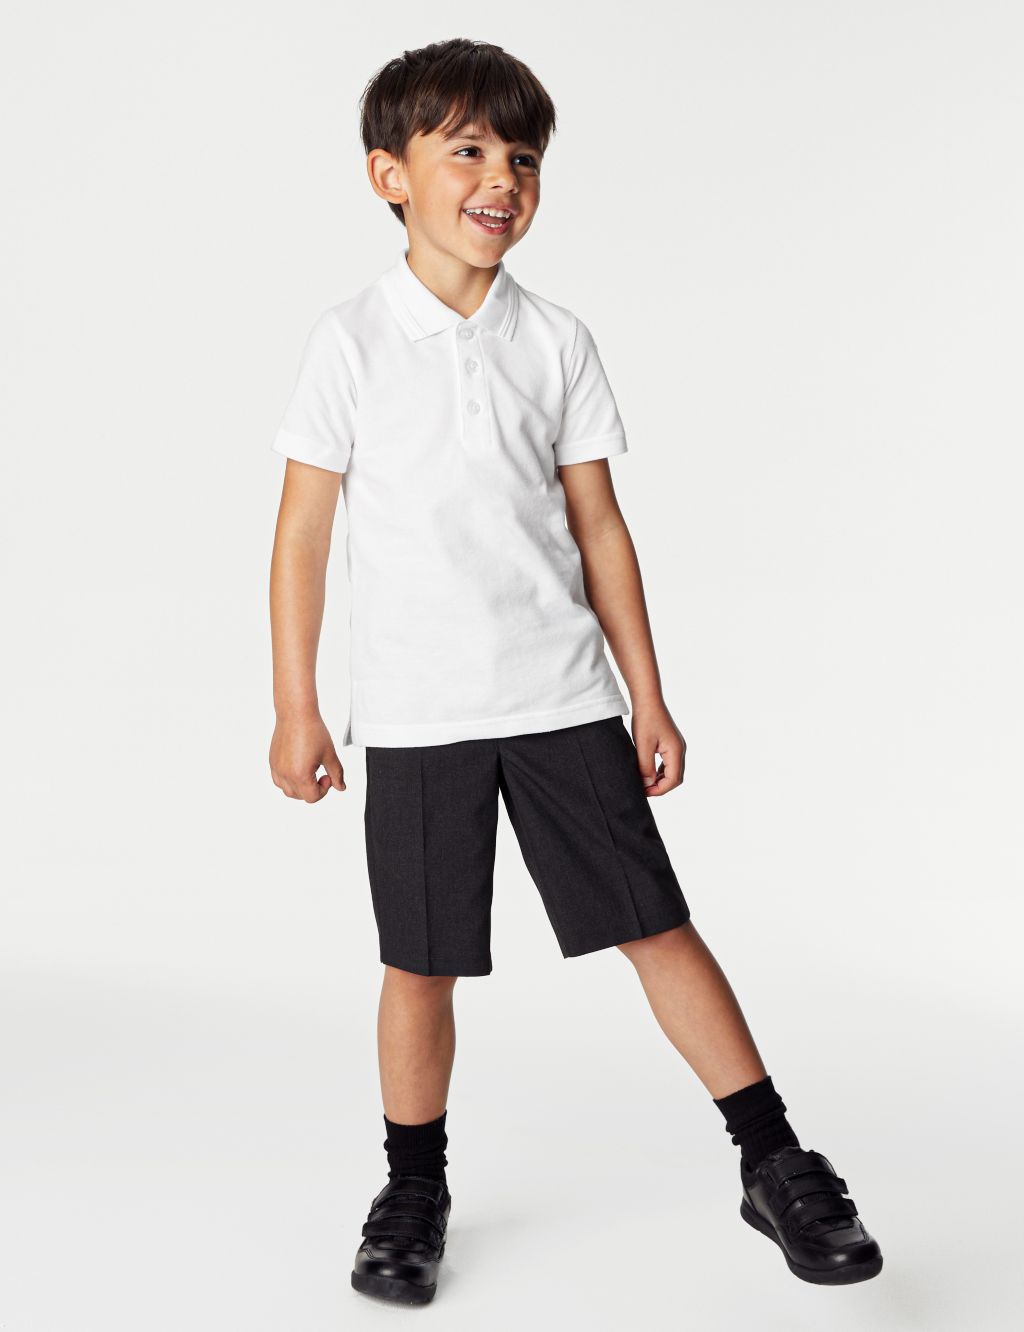 2pk Boys' Slim Fit School Polo Shirts (2-16 Yrs) image 2